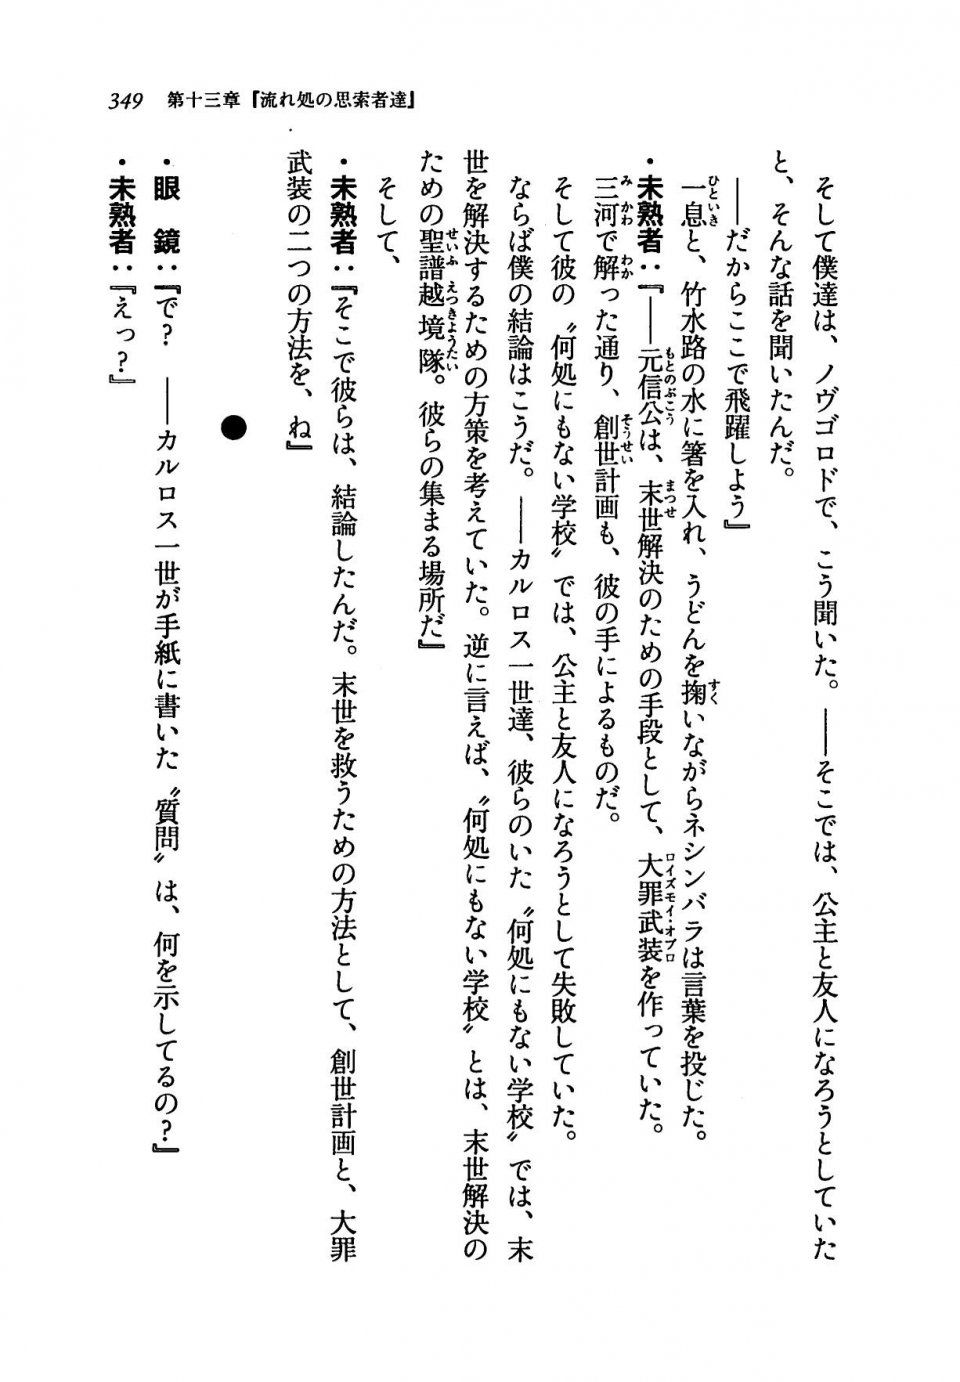 Kyoukai Senjou no Horizon LN Vol 19(8A) - Photo #349